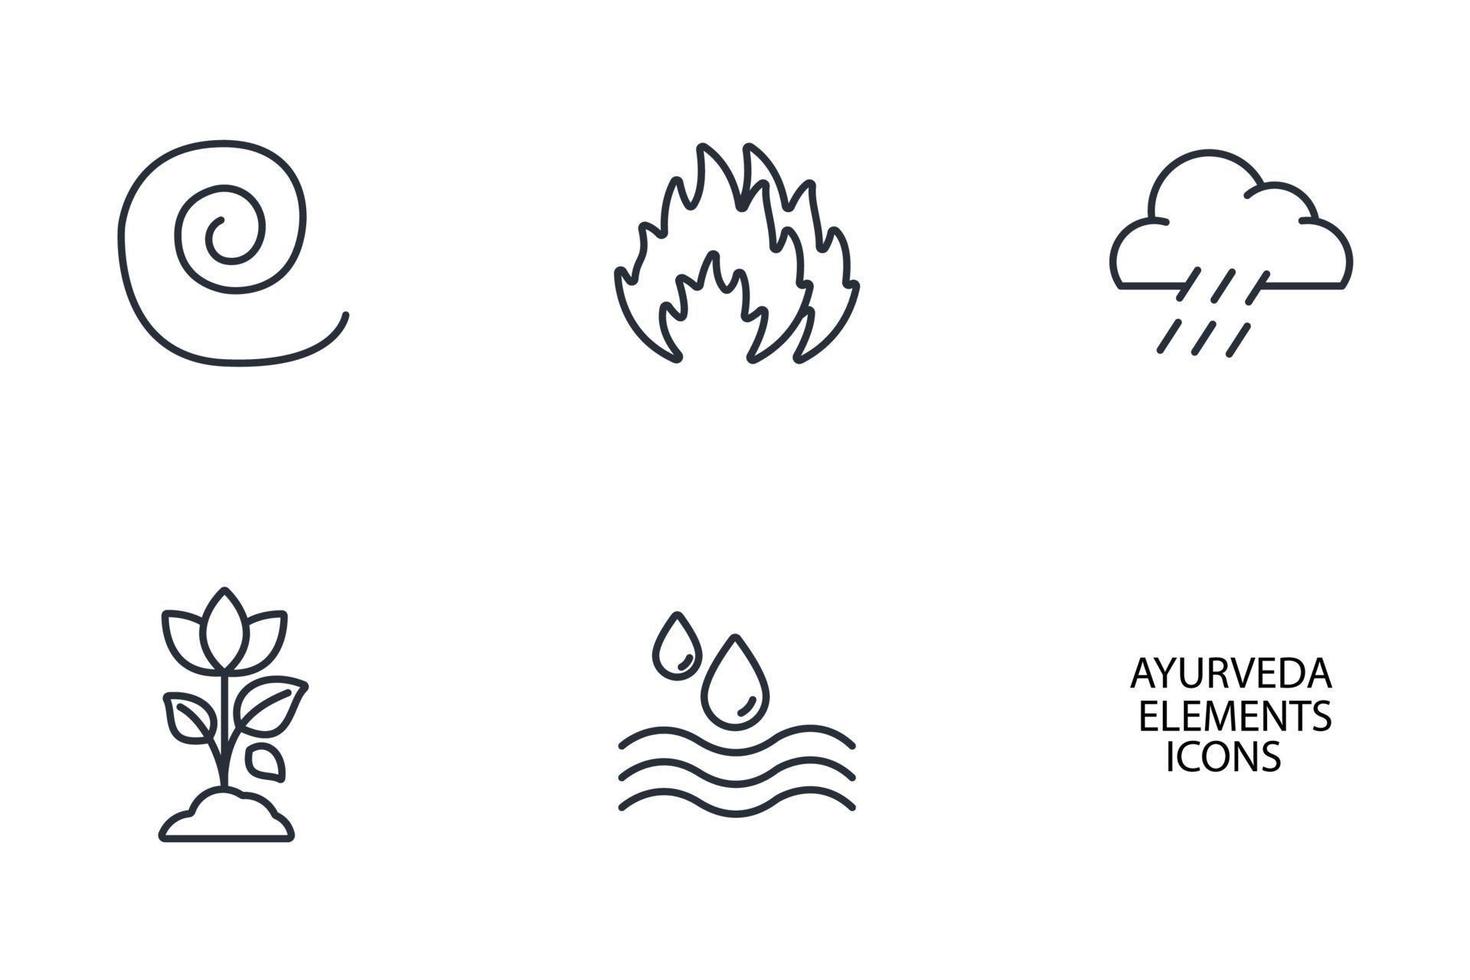 de vijf elementen van ayurveda iconen set. de vijf elementen van ayurveda pack symbool vectorelementen voor infographic web vector